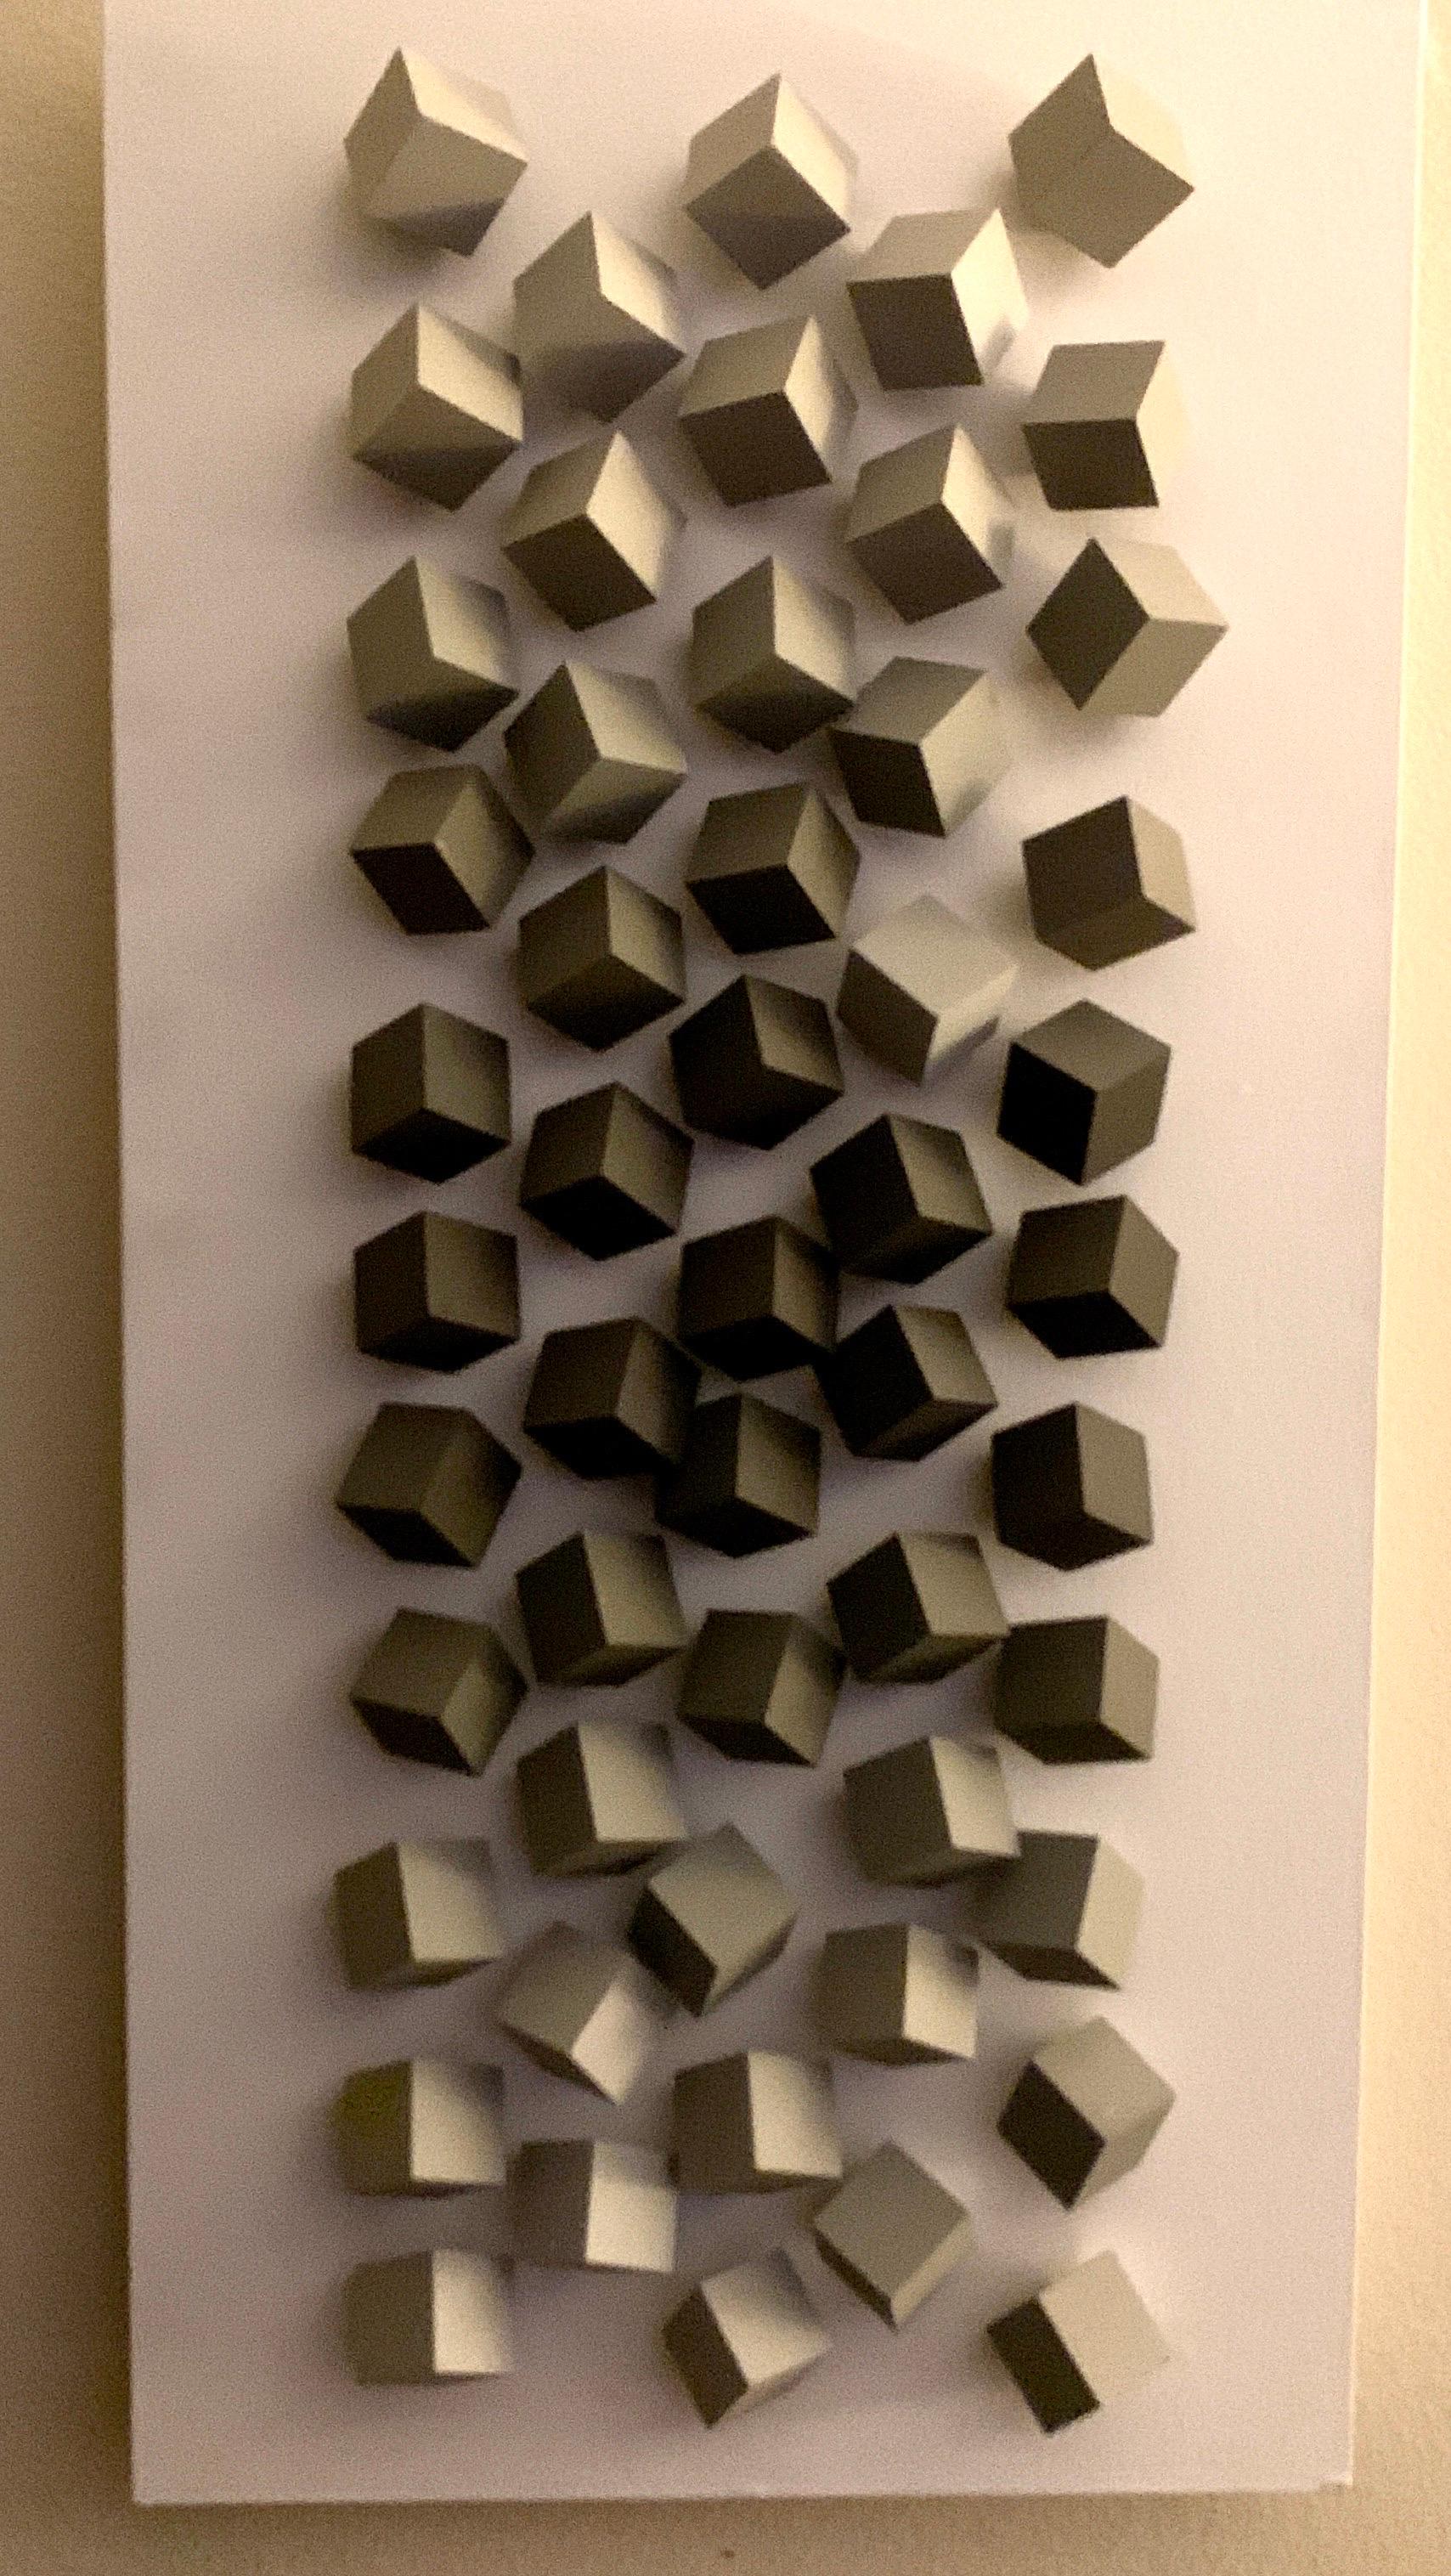 Wir sind verliebt in das Werk dieses Künstlers. Cícero Silva, der in seinem Studio in Brasilien lebt und arbeitet, schuf dieses Werk in limitierter Auflage mit in Grautönen bemalten Holzwürfeln auf einer weiß gestrichenen Platte. Das Stück hat ein